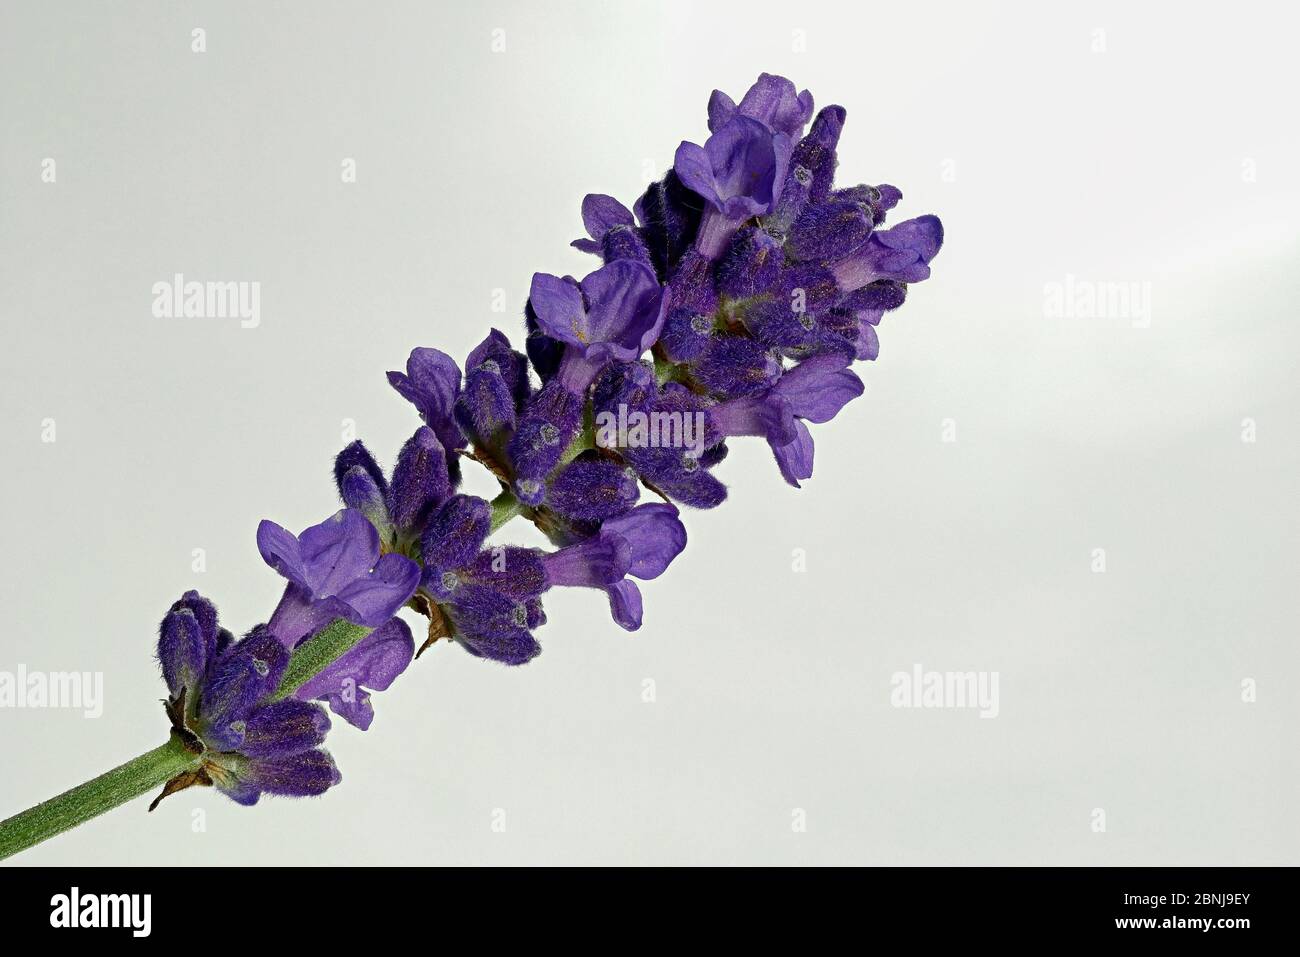 Schopavendel, Schmetterling Lavendel Latein Lavandula stoechas, stammt ursprünglich aus den sonnendurchfluteten Küstenregionen des Mittelmeers Stockfoto